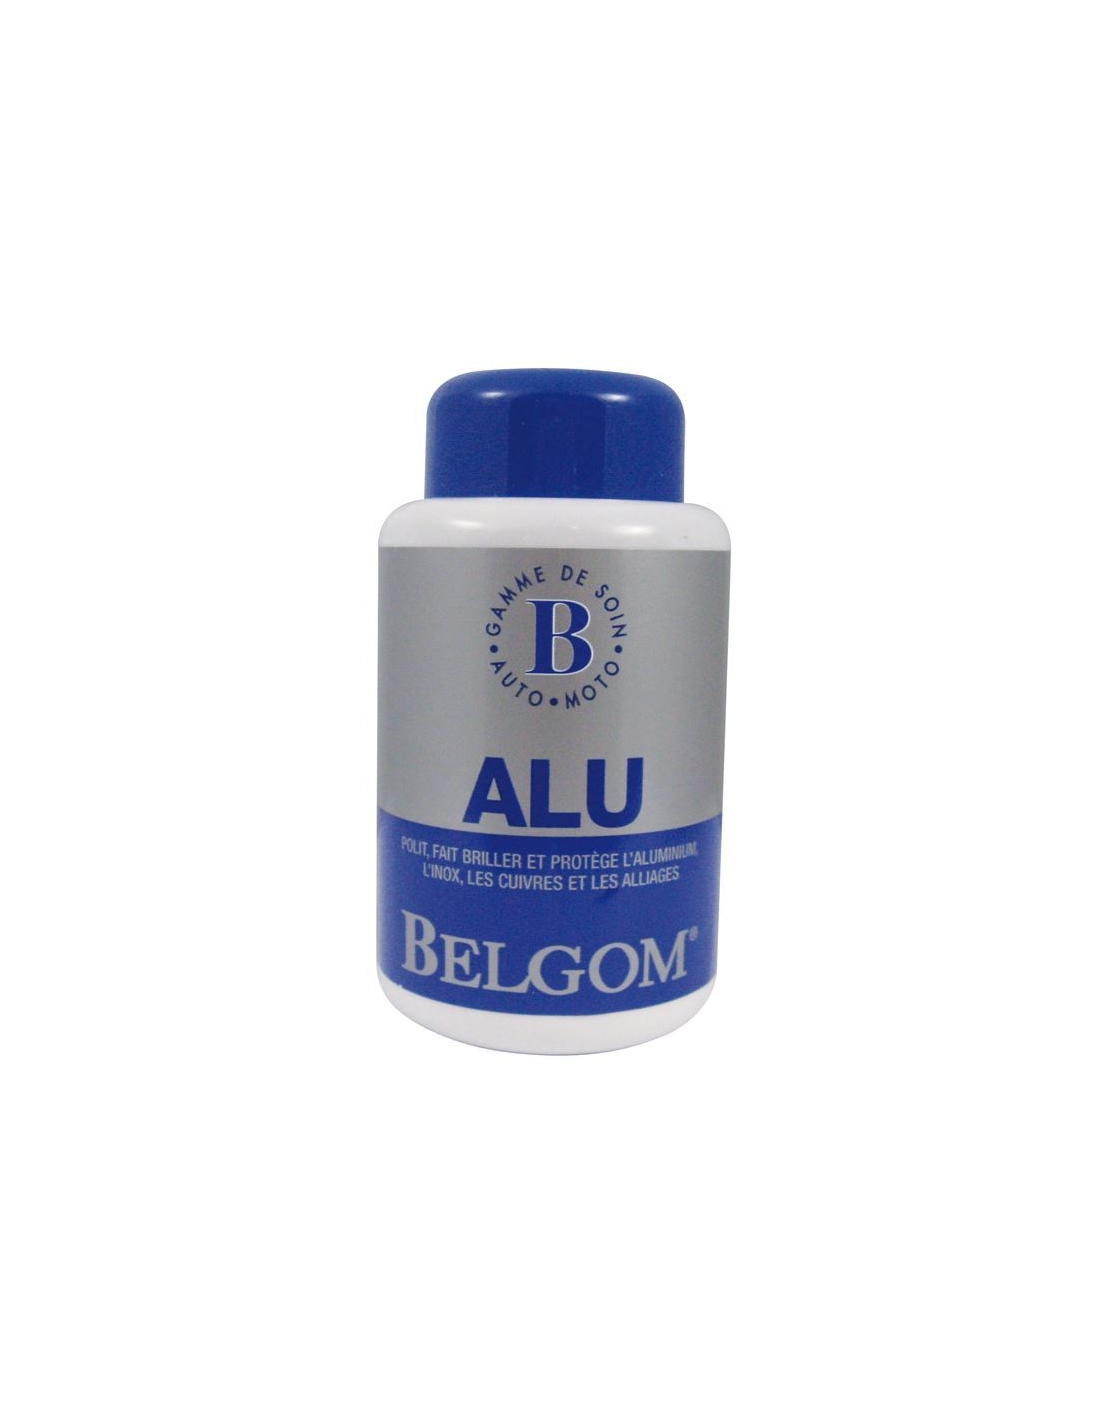  BELGOM - Pack Belgom Alu et Chromes - 250ml - Parfait